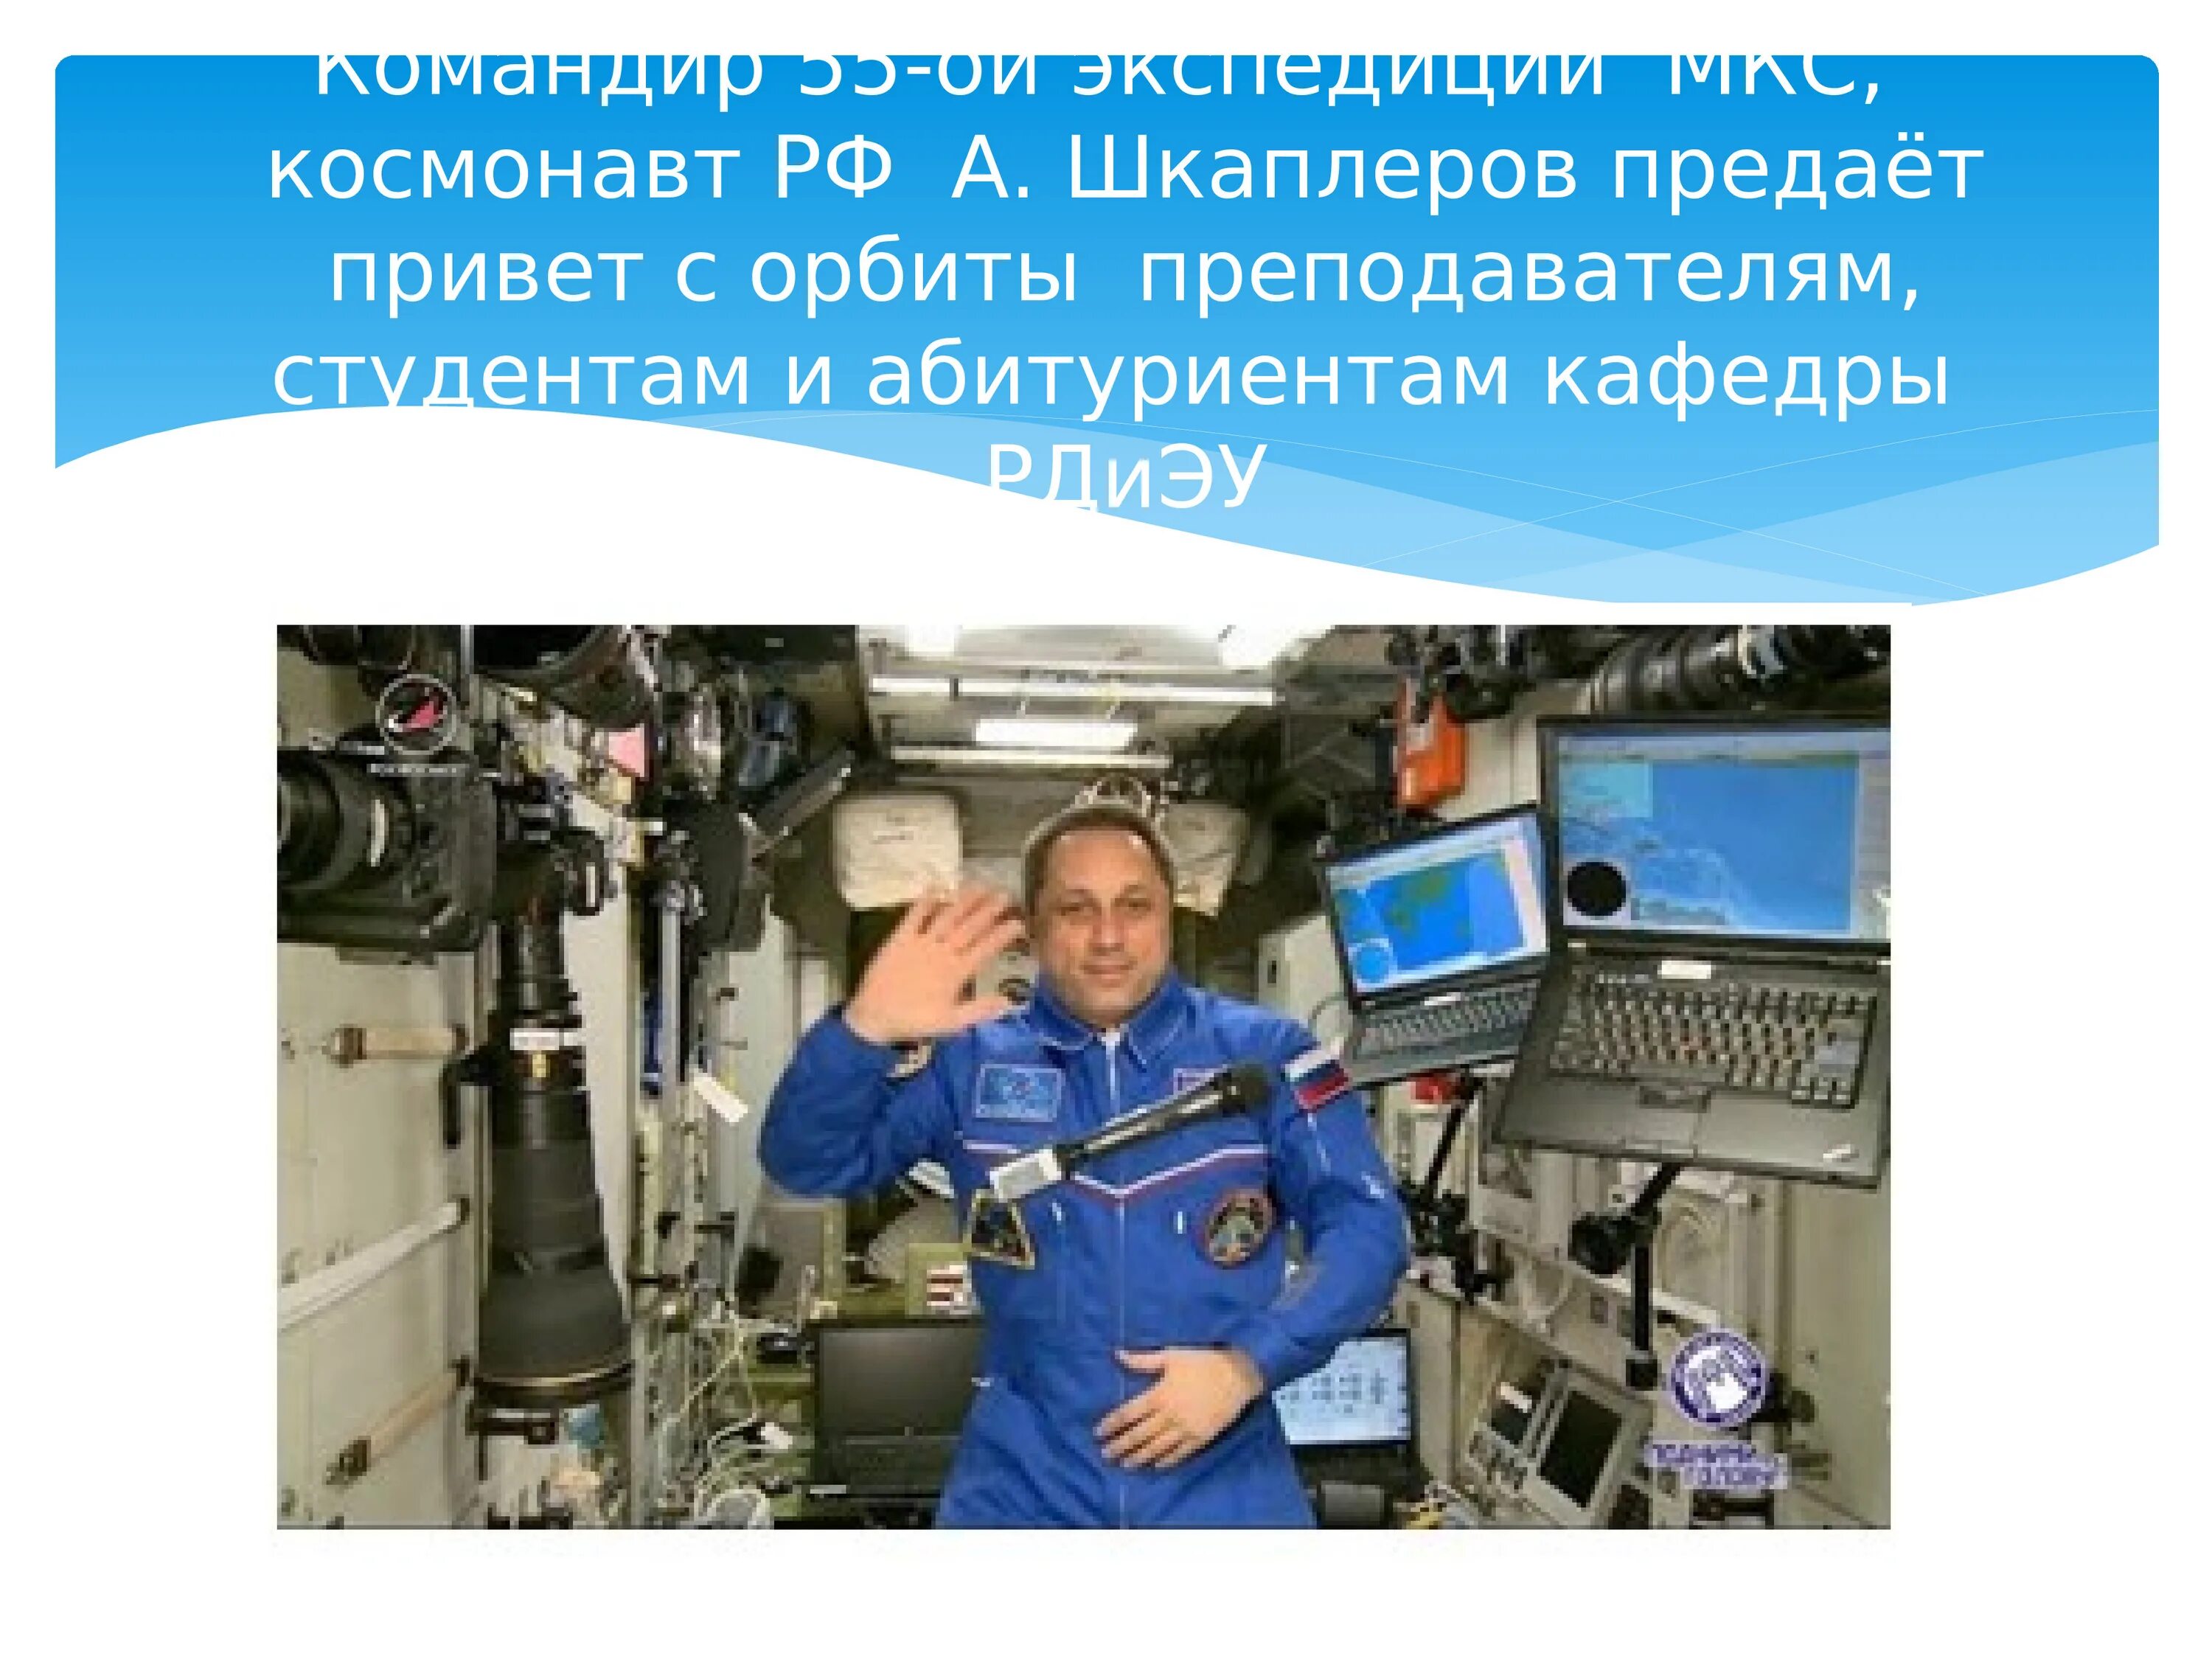 Количество космонавтов в россии. Сколько зарабатывает космонавт на МКС. ЗП Космонавта России. Шкаплер космонавты России презентация. Сколько зарабатывают космонавты.